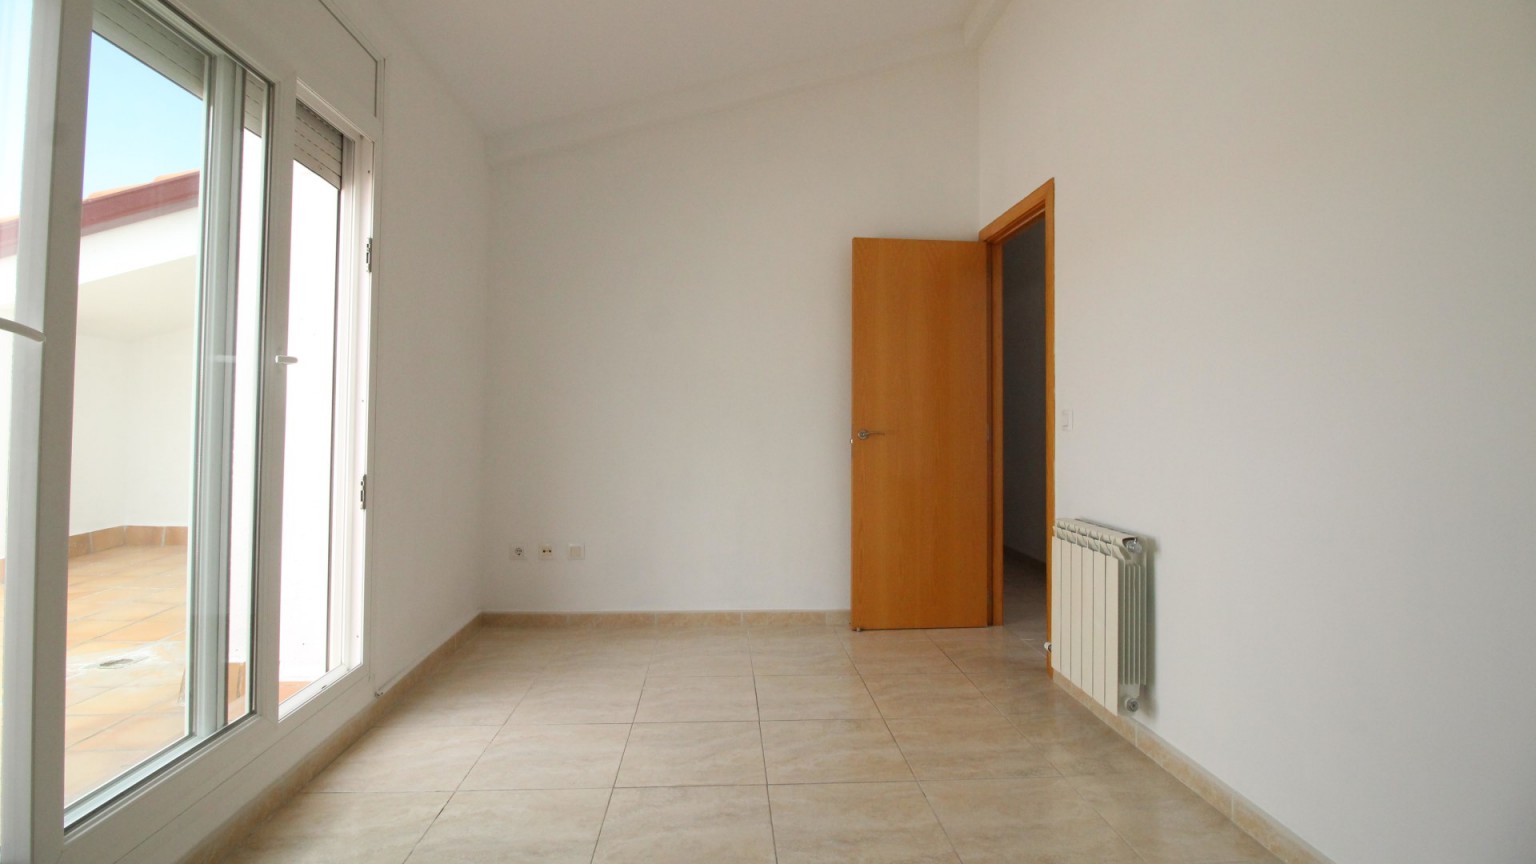 Dúplex en venta, de 3 habitaciones, con parking incluido, zona Horta Capallera